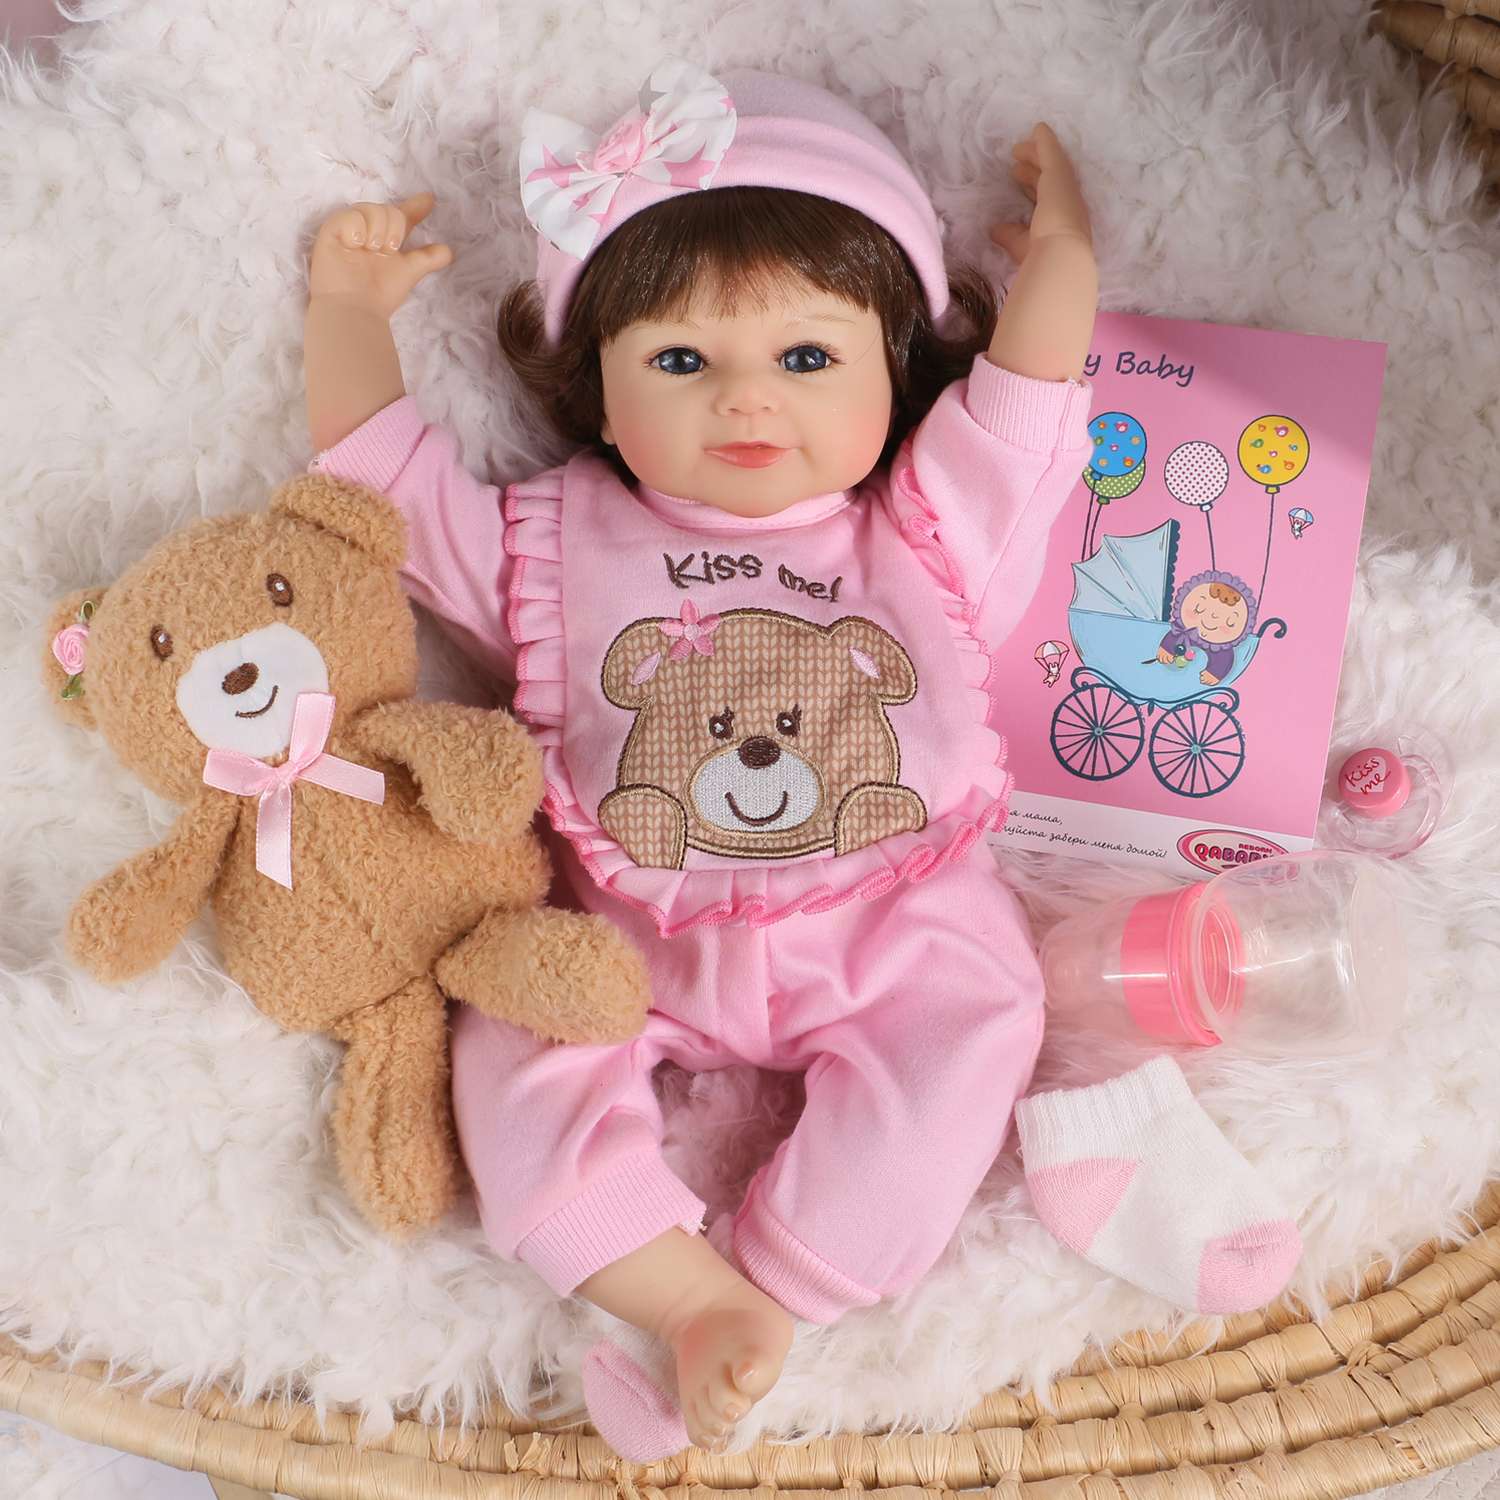 Кукла Реборн QA BABY Варвара девочка большая пупс набор игрушки для девочки 42 см 45008 - фото 2